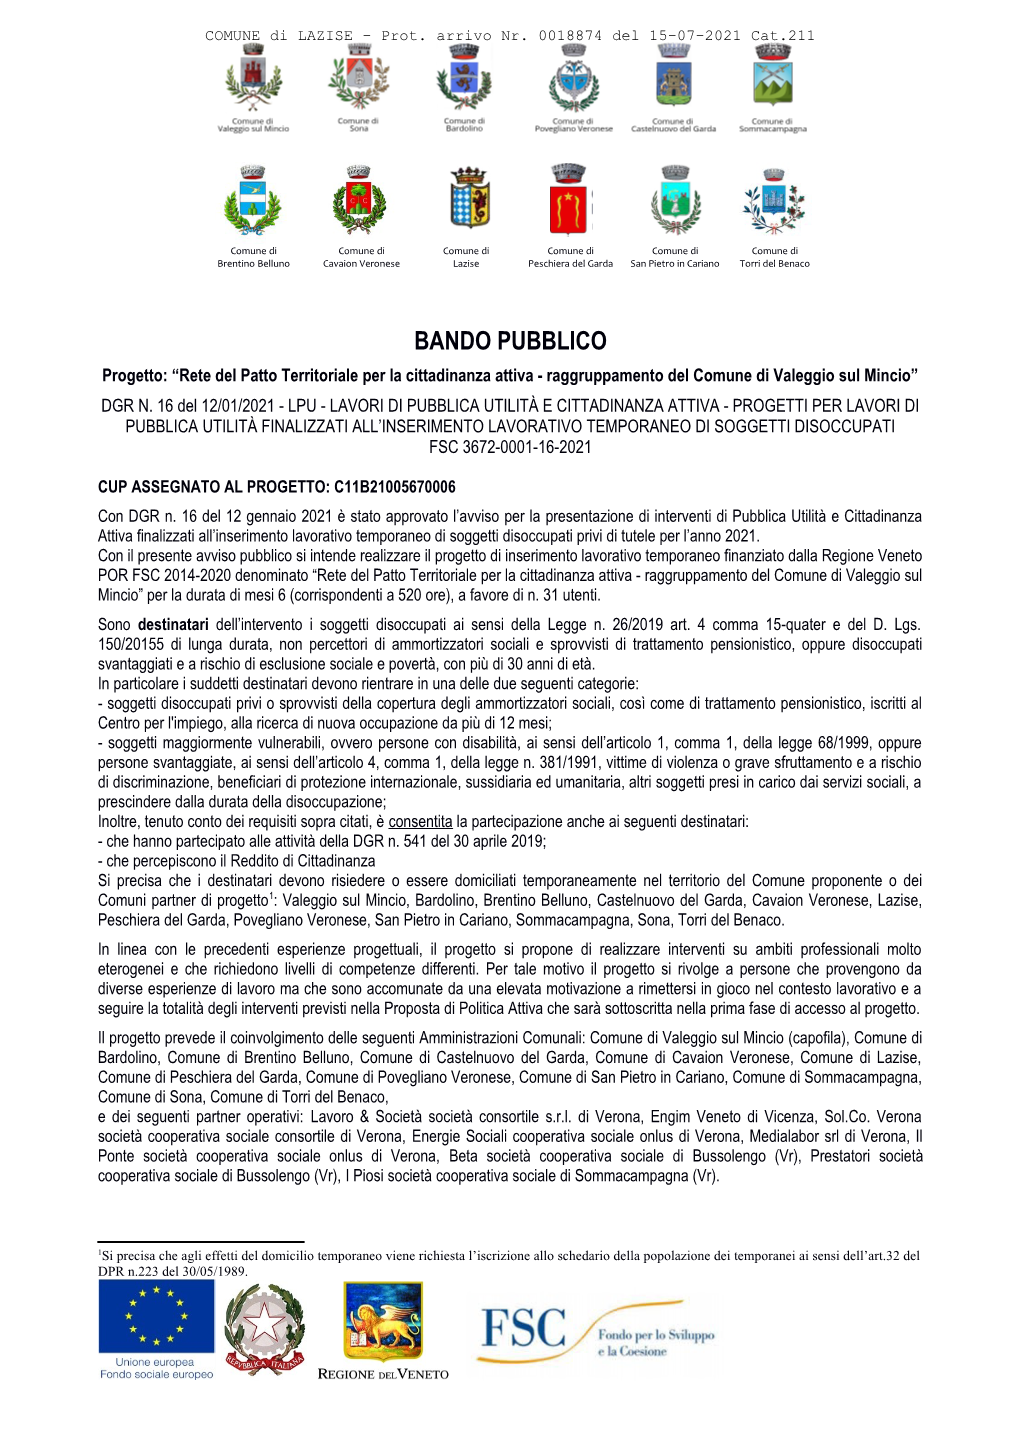 BANDO PUBBLICO Progetto: “Rete Del Patto Territoriale Per La Cittadinanza Attiva - Raggruppamento Del Comune Di Valeggio Sul Mincio” DGR N